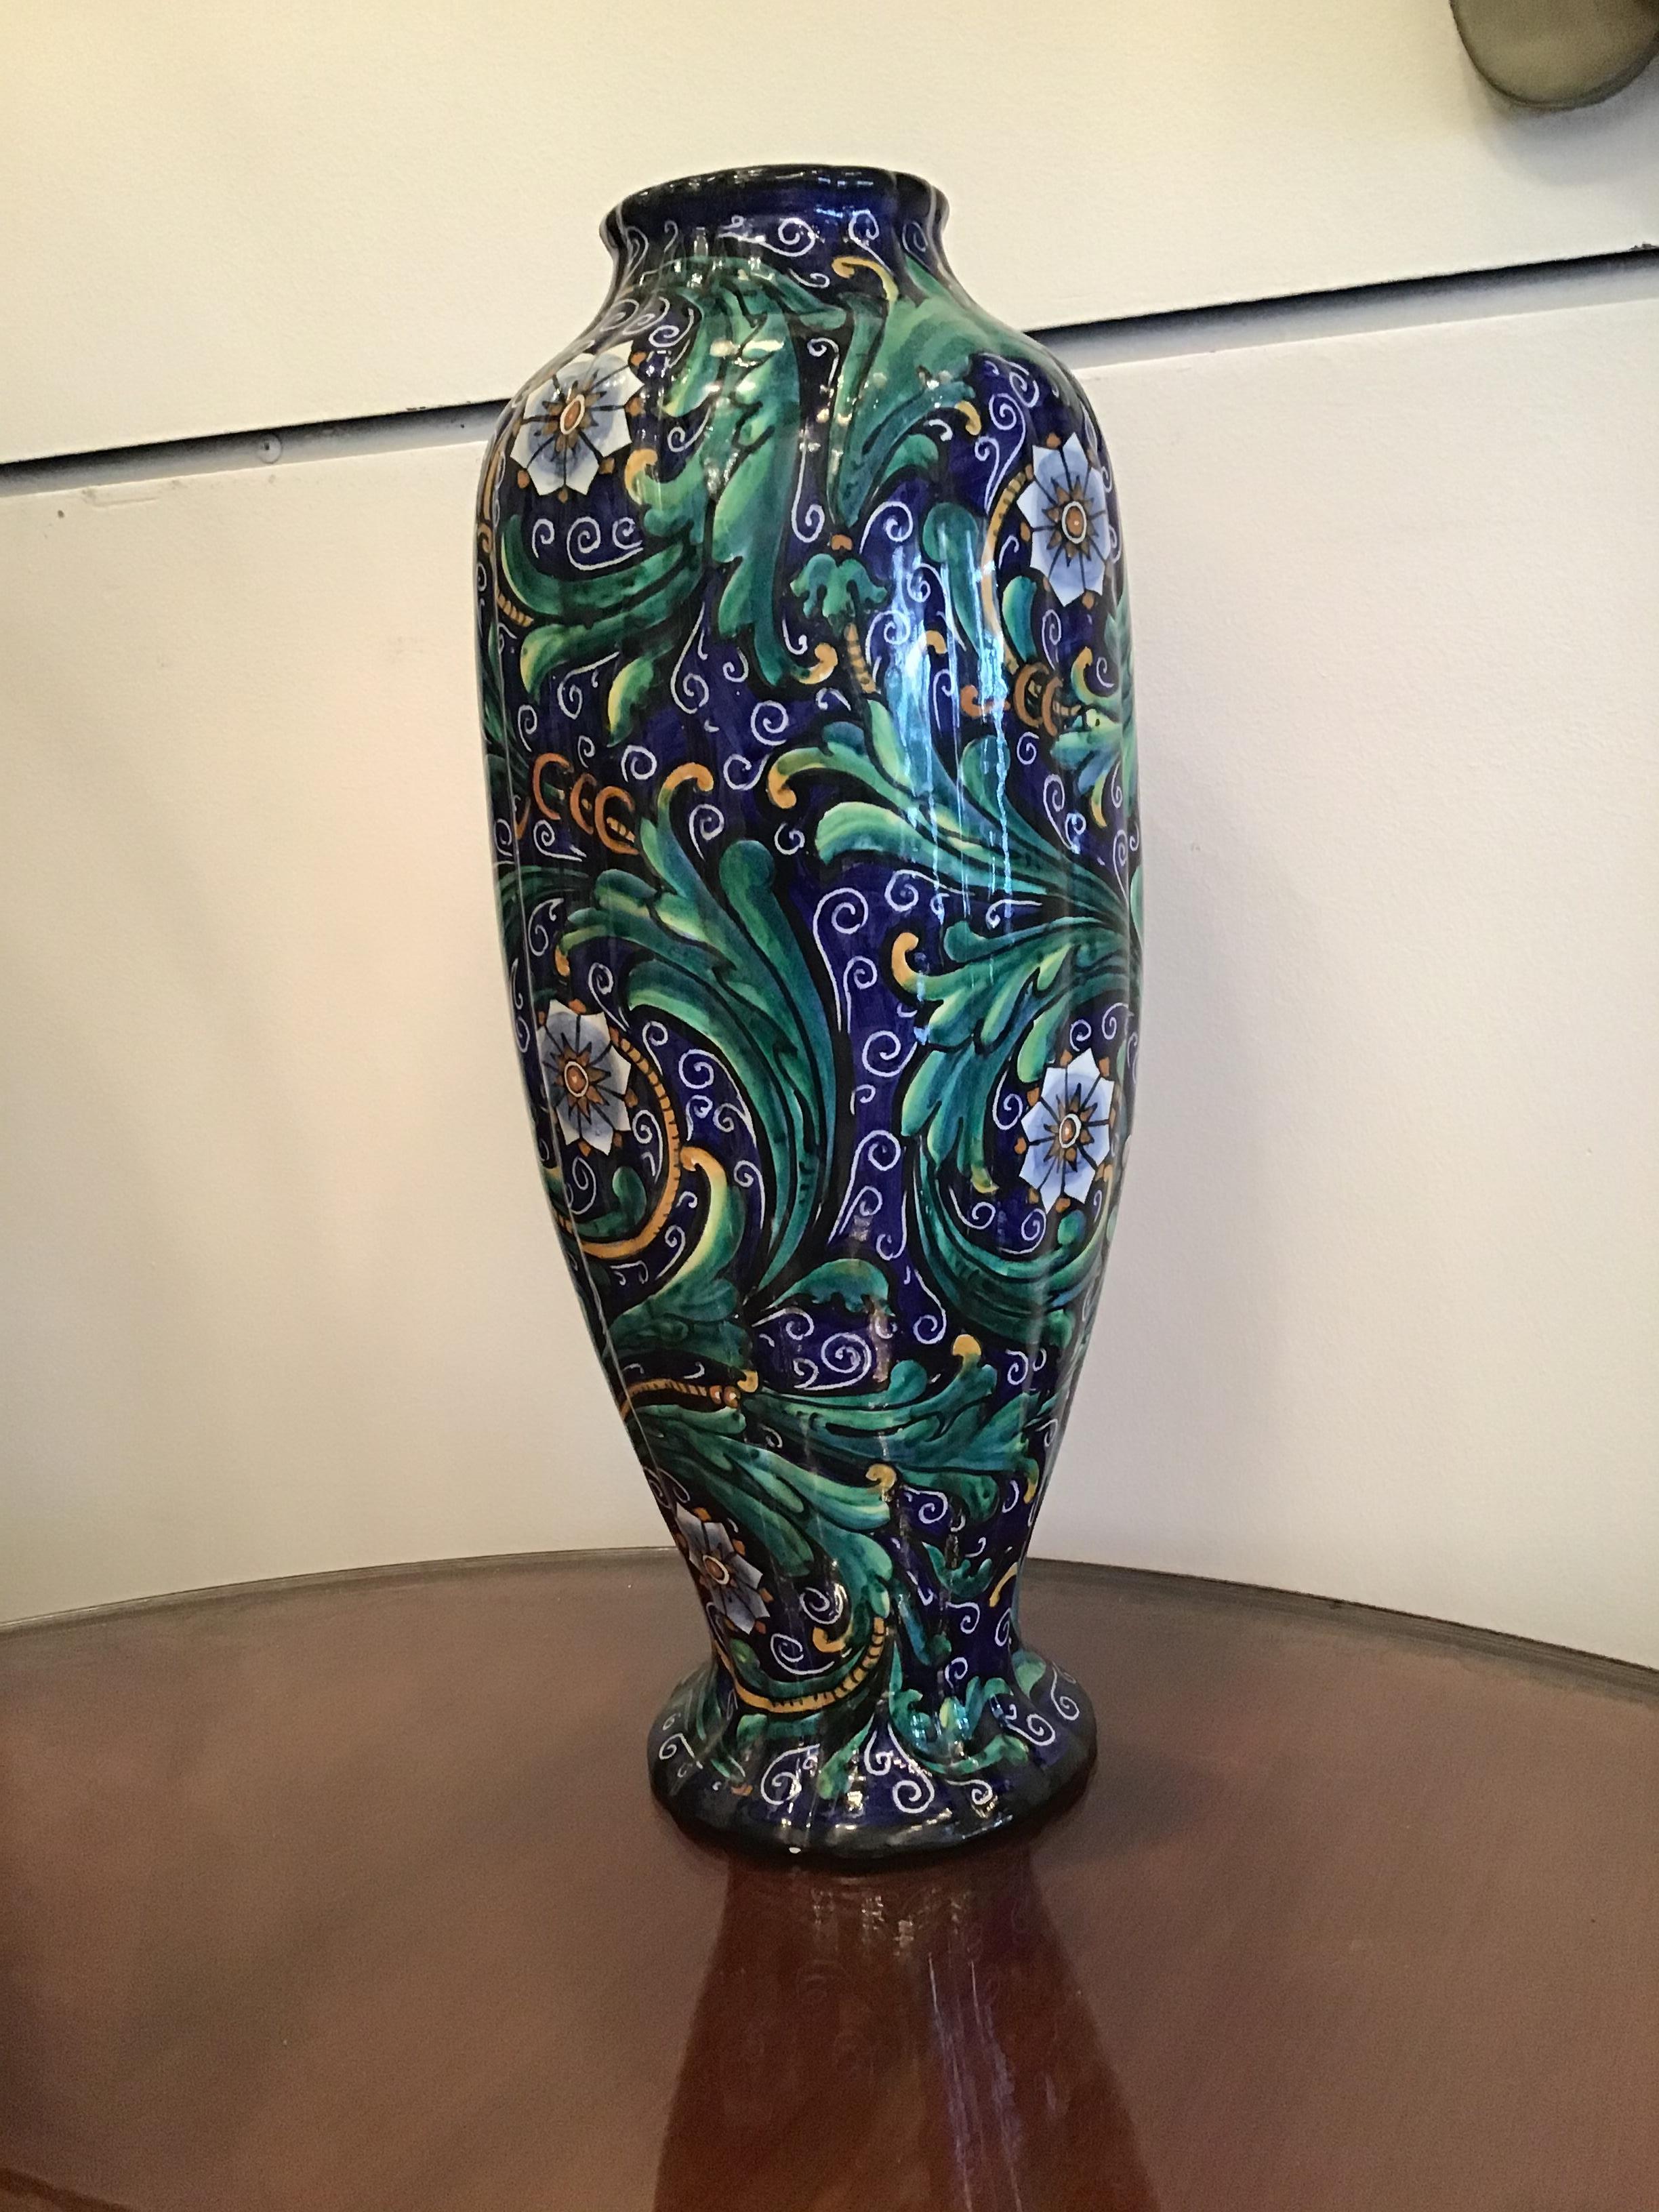 Ferruccio Mengaroni Vase Keramik 1940 Italien.